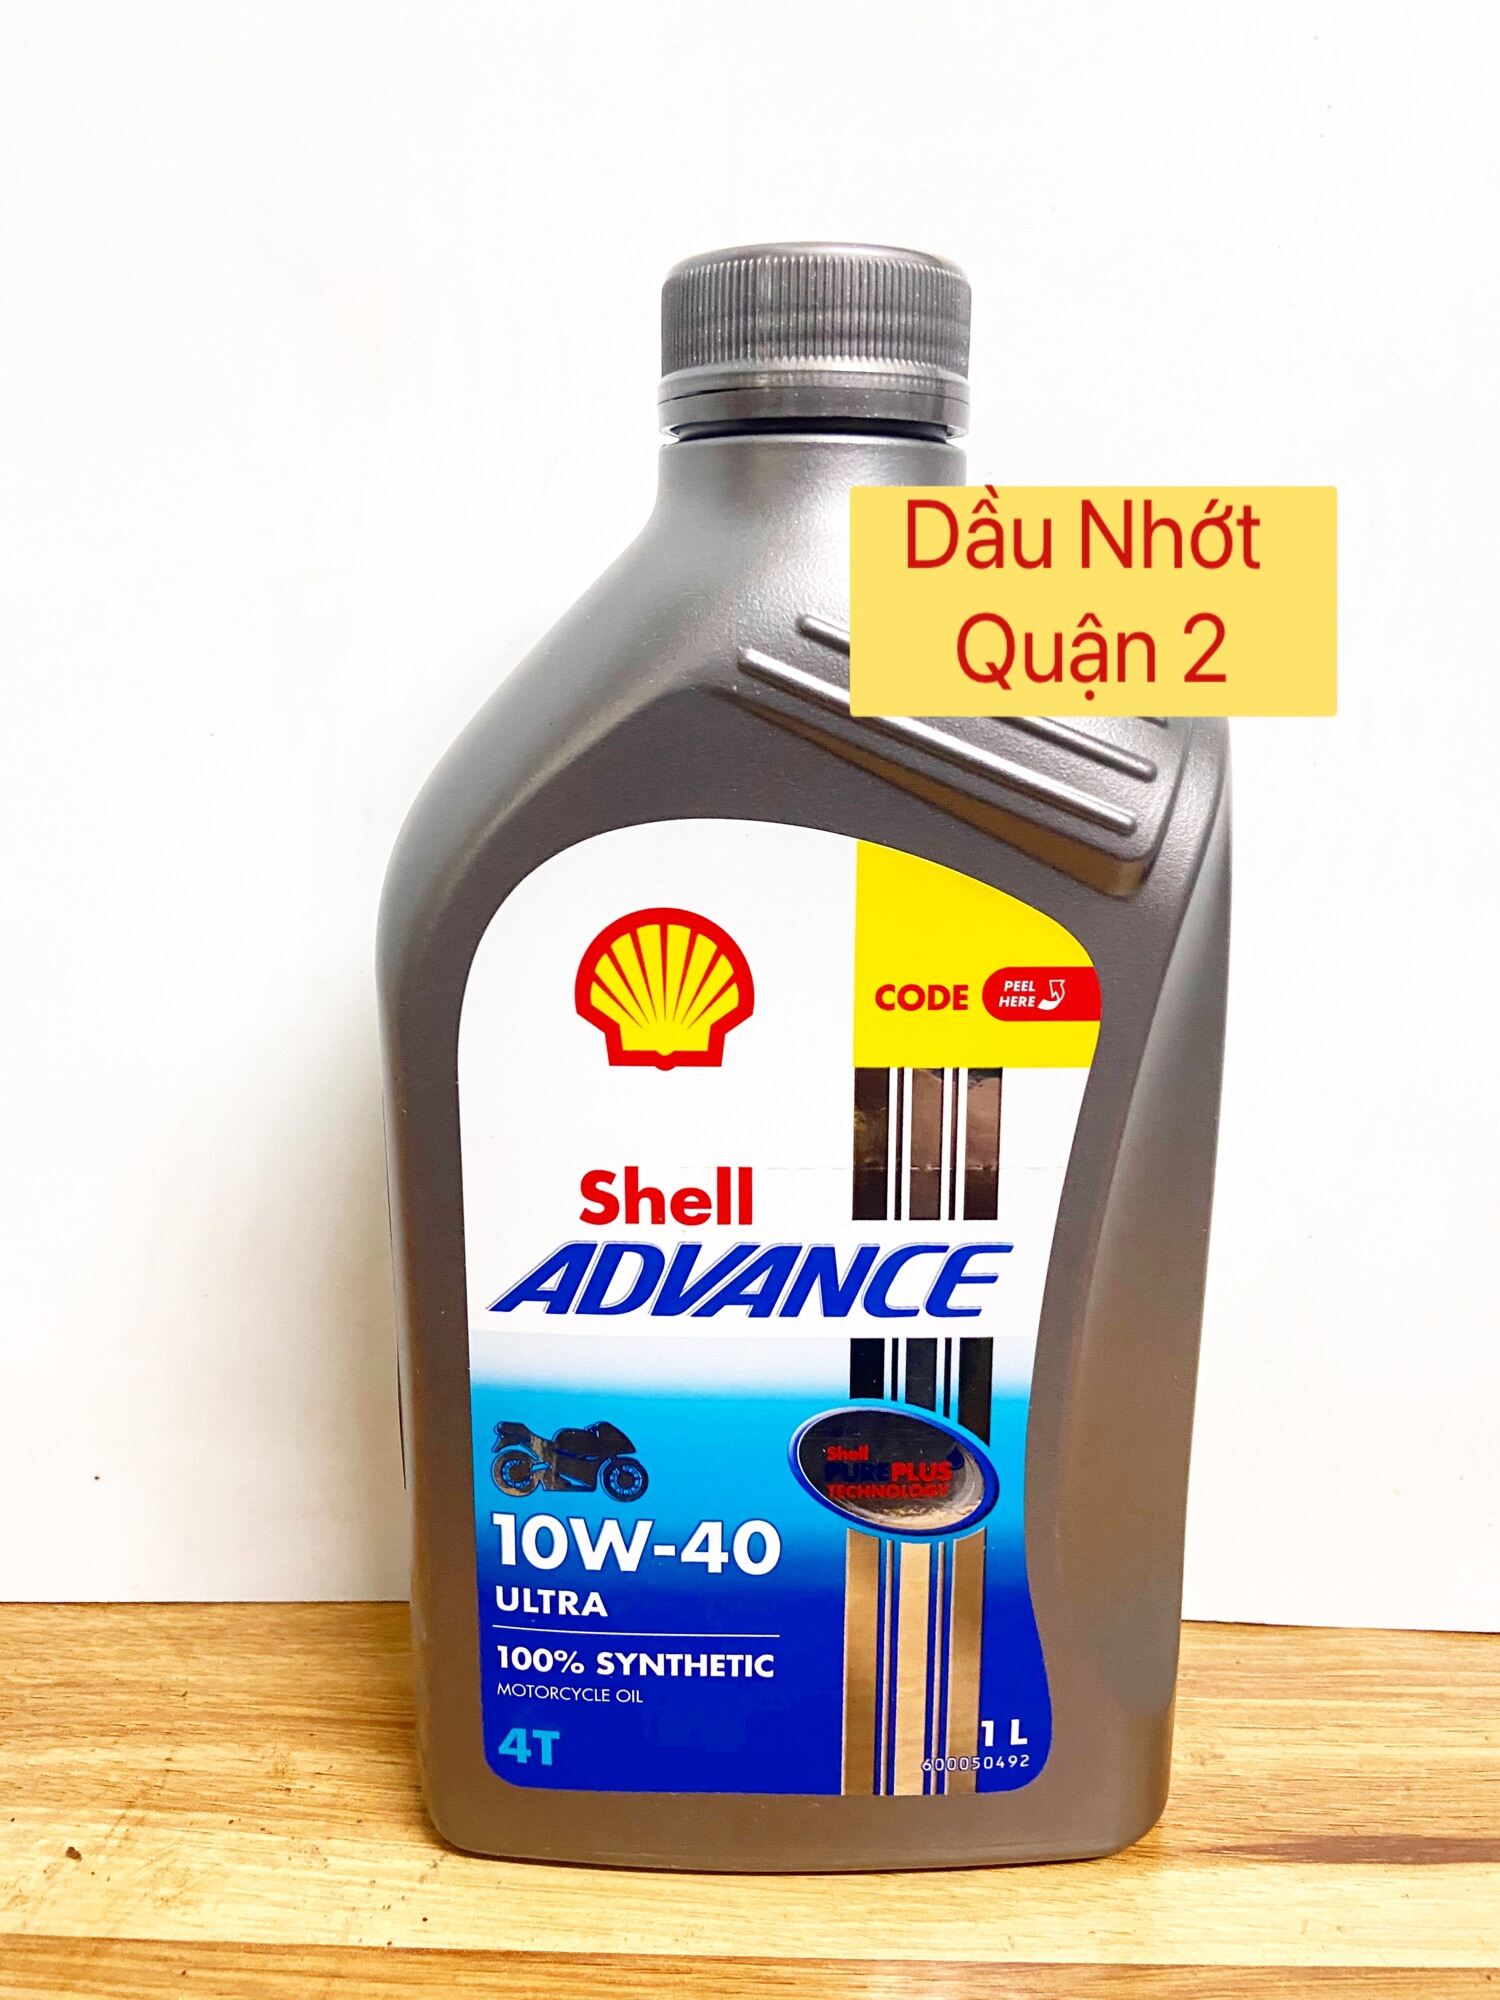 Shell Advance Ultra dành cho xe số - 1L